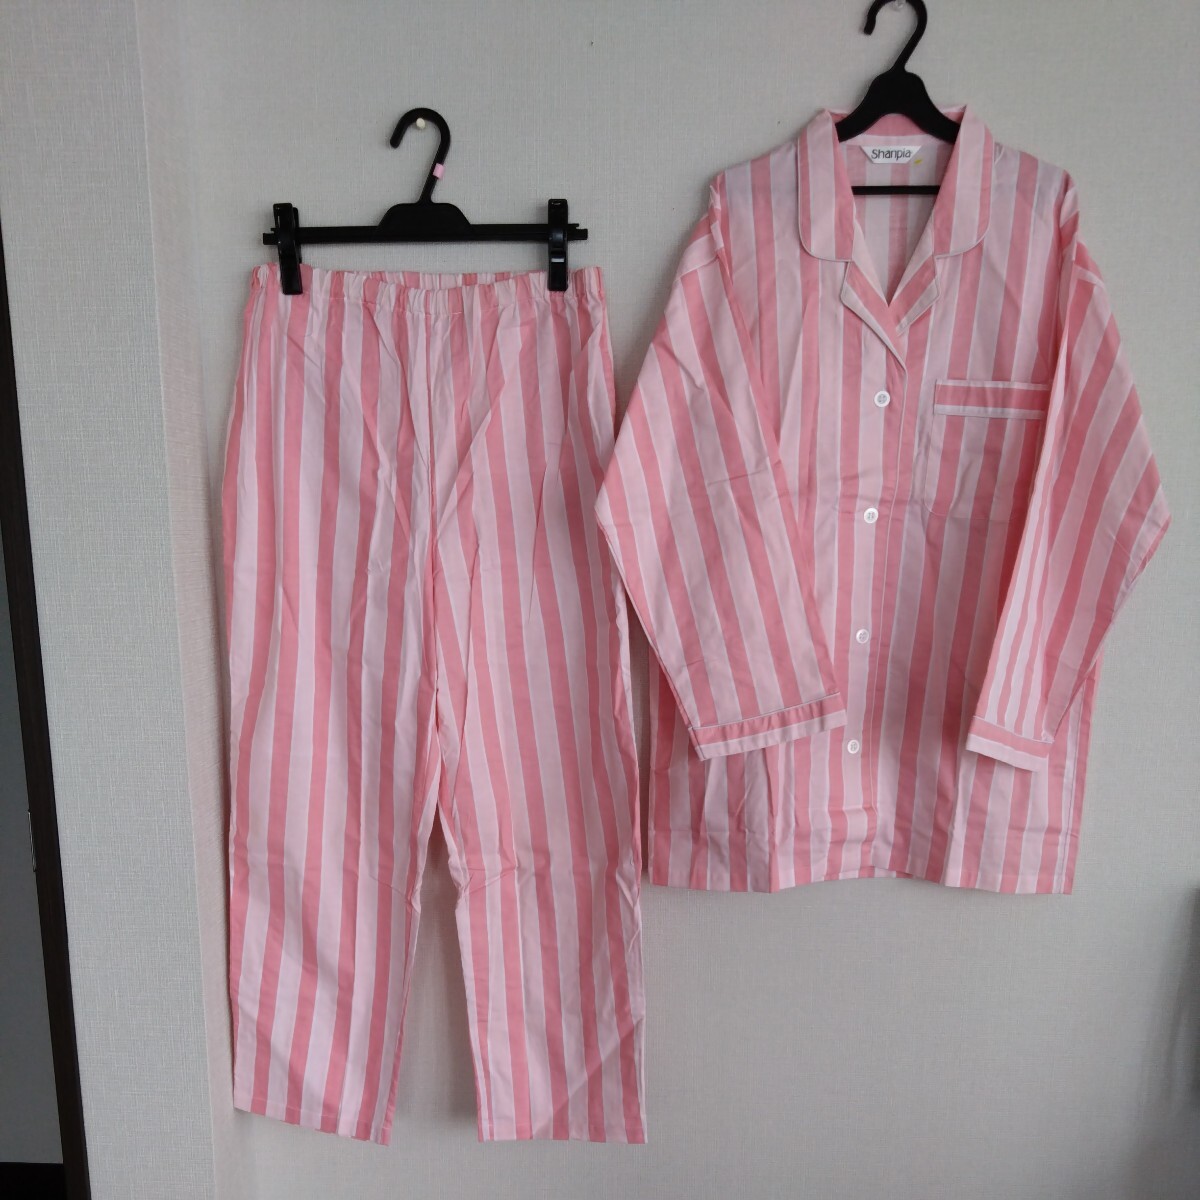 新品　パジャマ☆ピンク濃淡&白☆爽やか、可愛いシンプルなデザイン☆サイズL、ゆったりサイズです。LLの方にも。☆洗い替え、普段使いに。_ピンク濃淡&白のシンプルなパジャマ